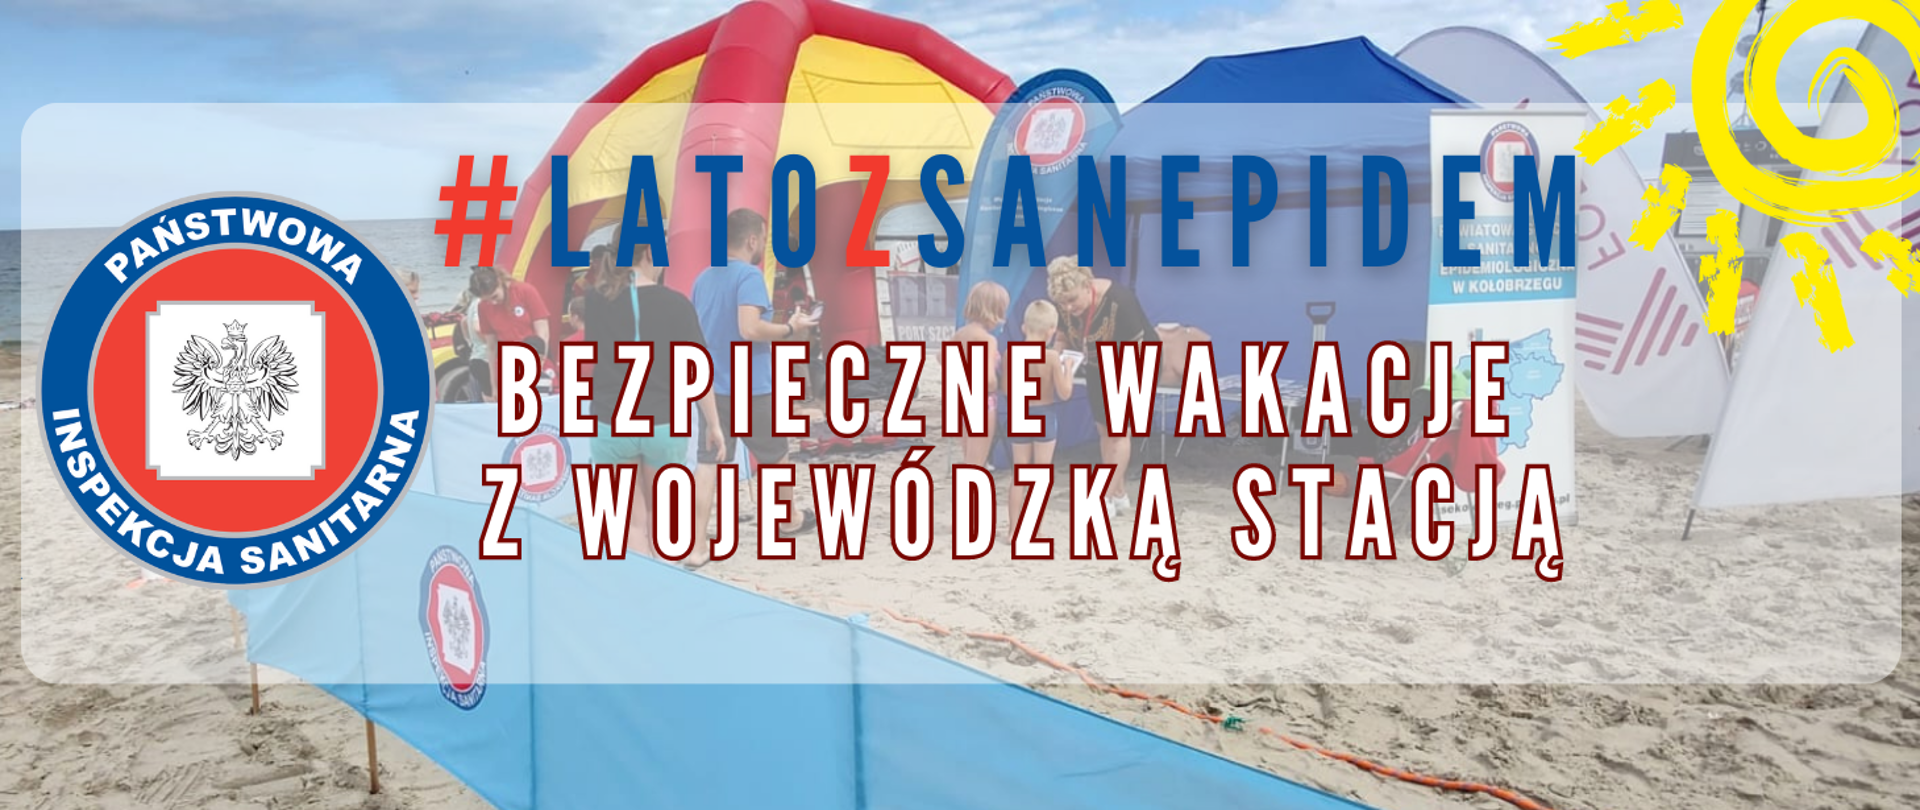 Grafika przedstawia logo Państwowej Inspekcji Sanitarnej na tle plaży. Obok znajduje się napis „#latozsanepidem bezpieczne wakacje z wojewódzką stacją”.